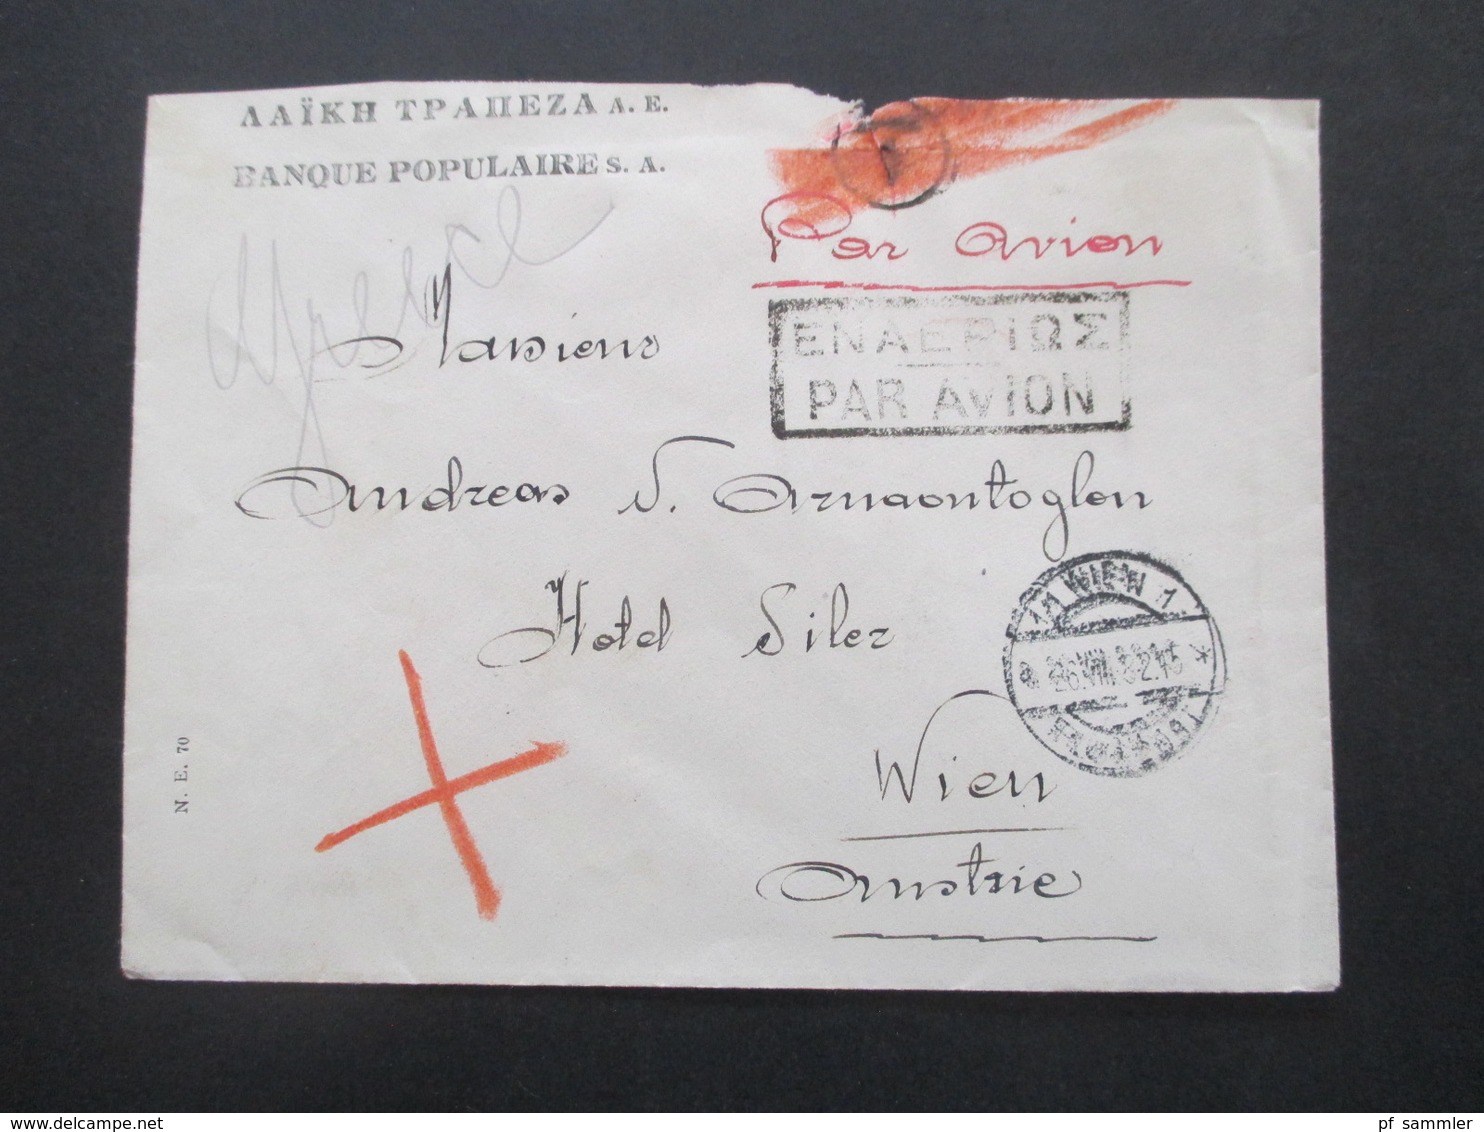 Griechenland 1932 Par Avion Luftpost Banque Populaires Nach Wien Mit Ank. Stempel Rücks. Nr. 350 (4) MeF - Storia Postale